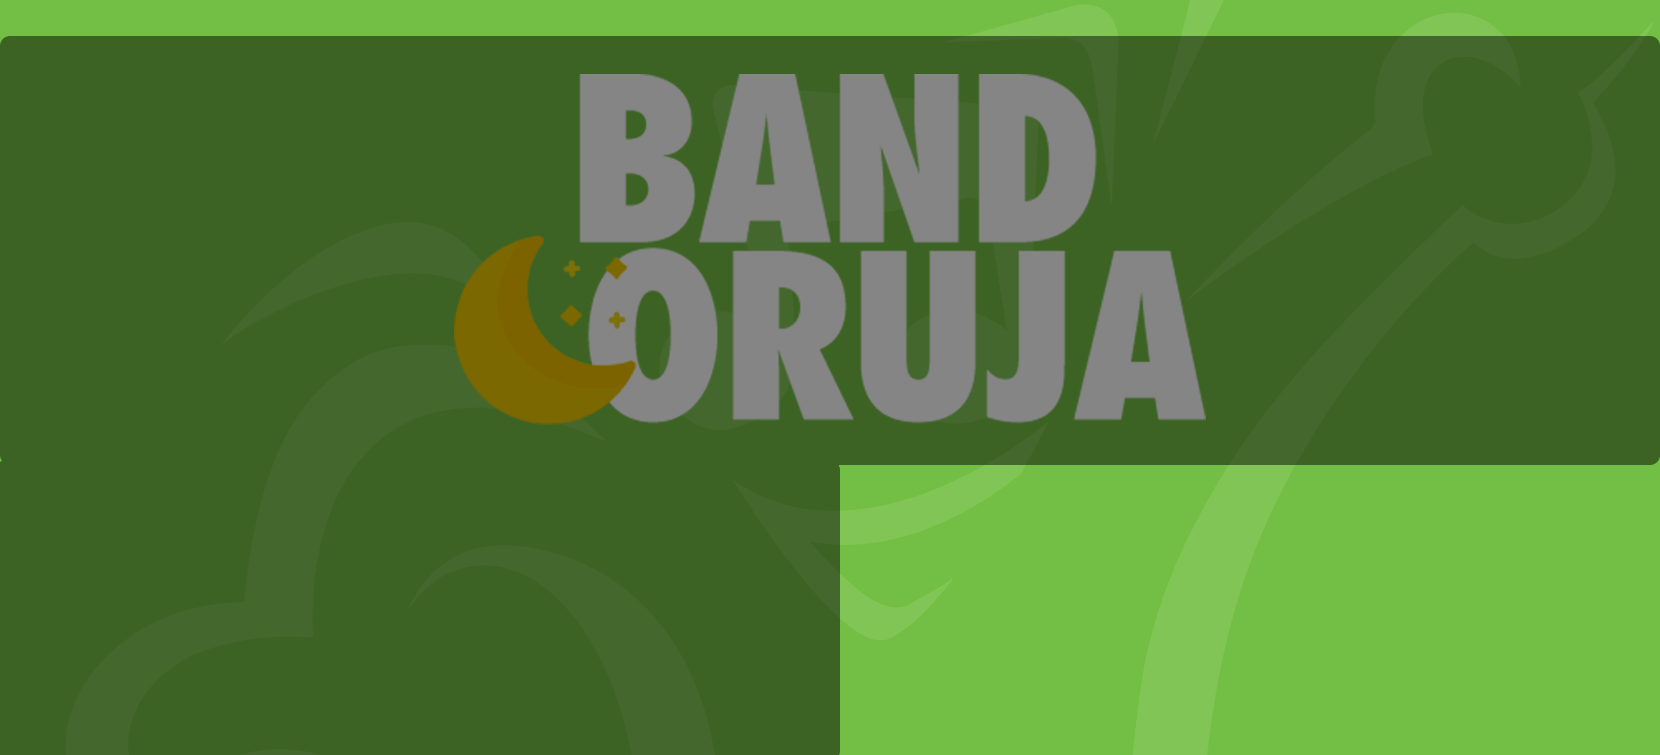 Band Coruja